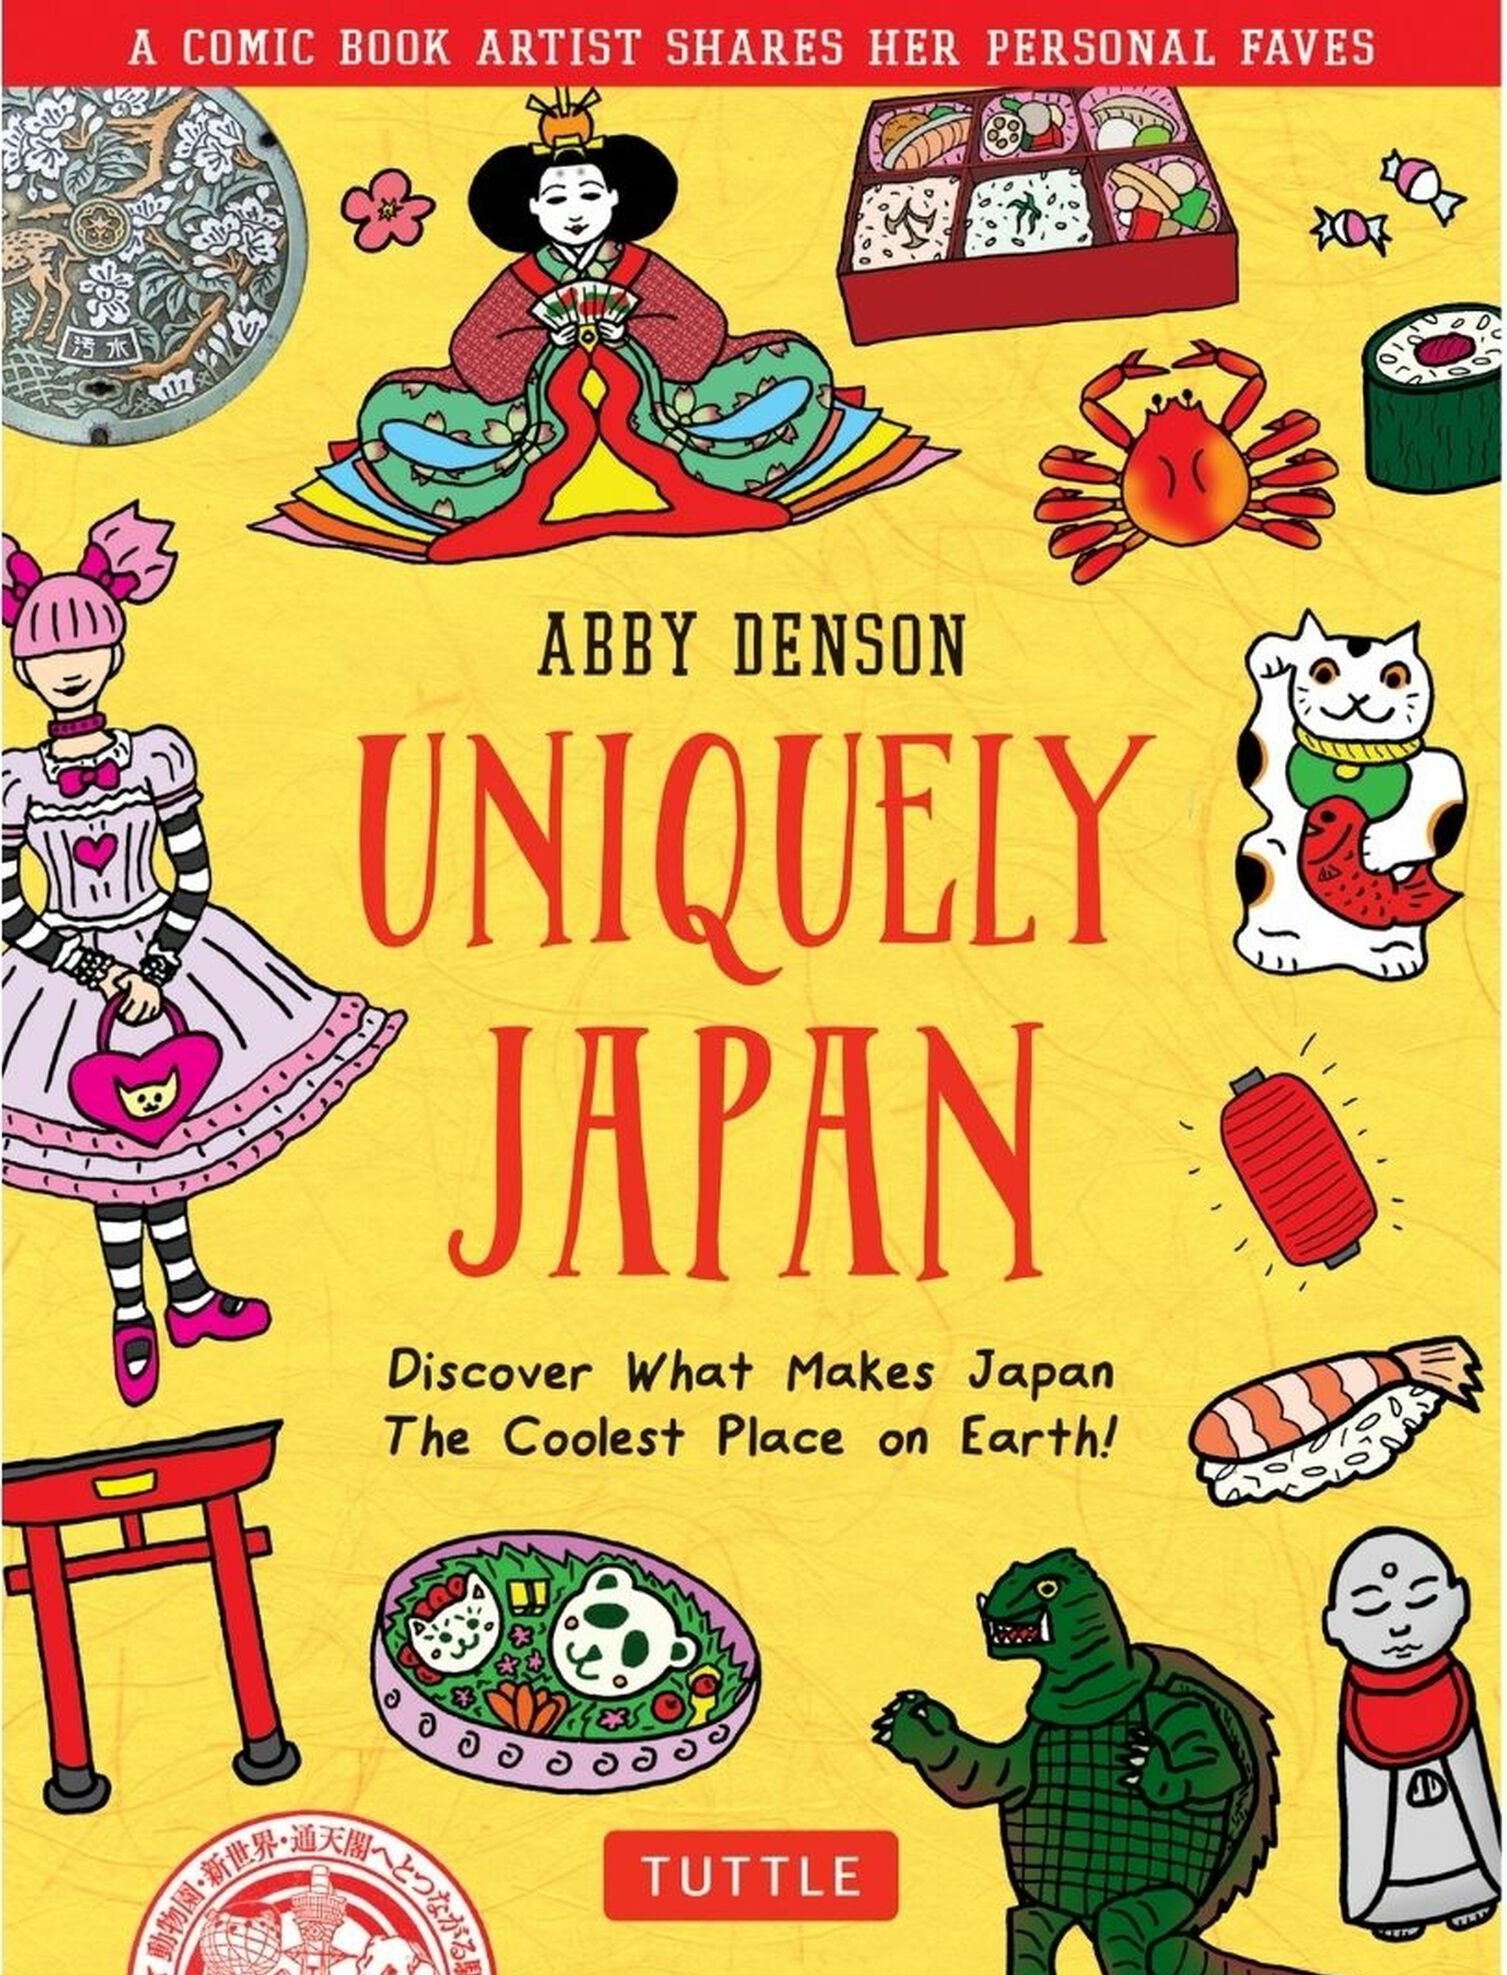 Interview | “Uniquely Japan” author Abby Denson